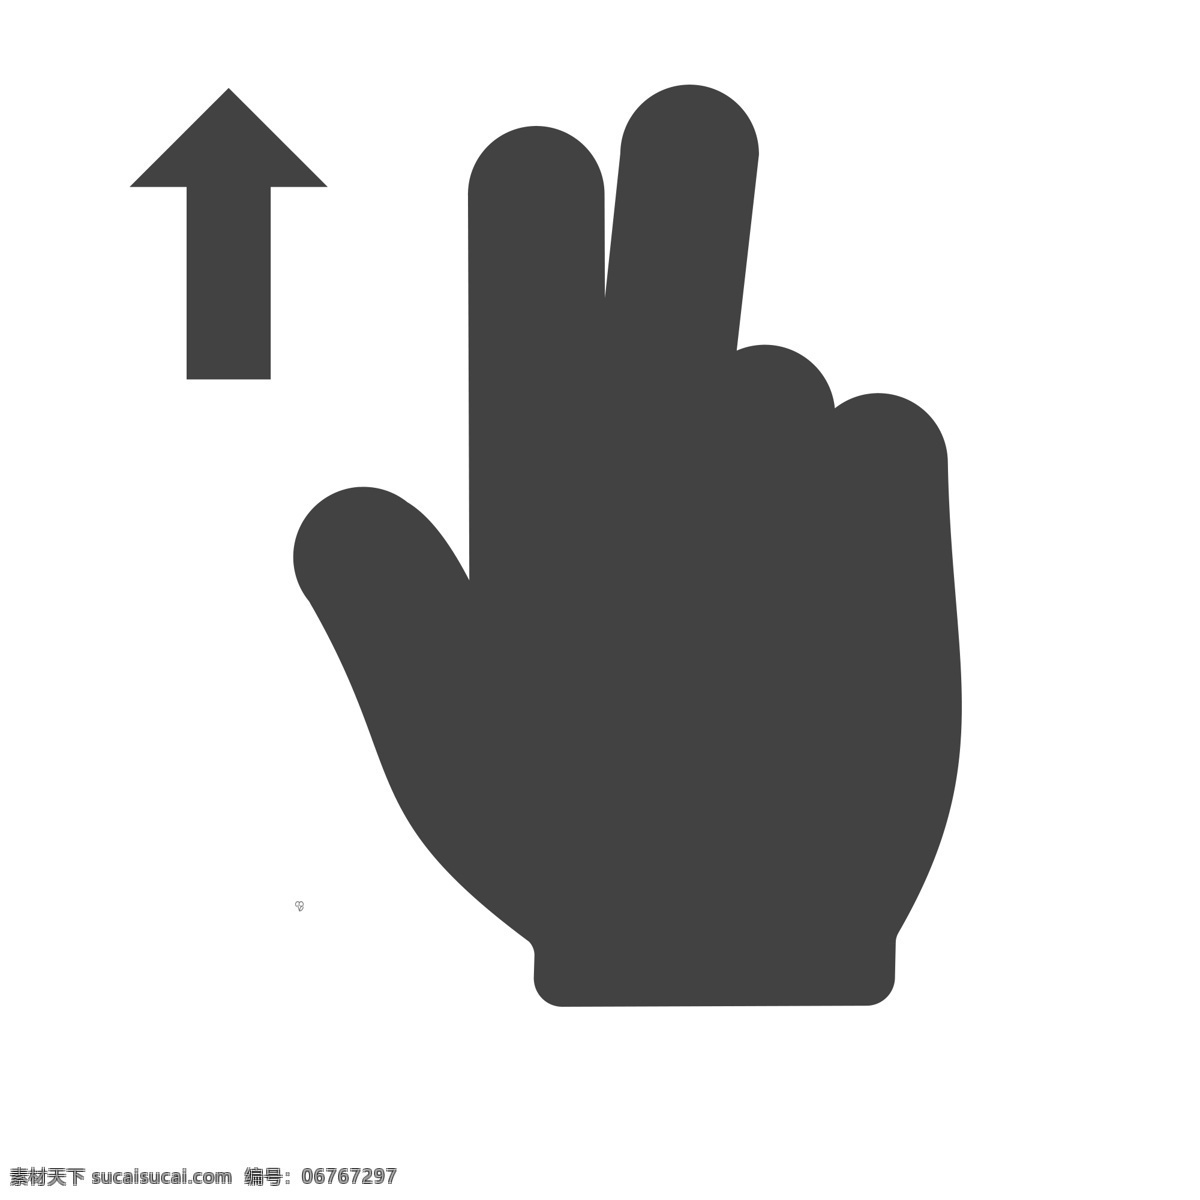 手势图标 手势 扁平化ui ui图标 手机图标 界面ui 网页ui h5图标